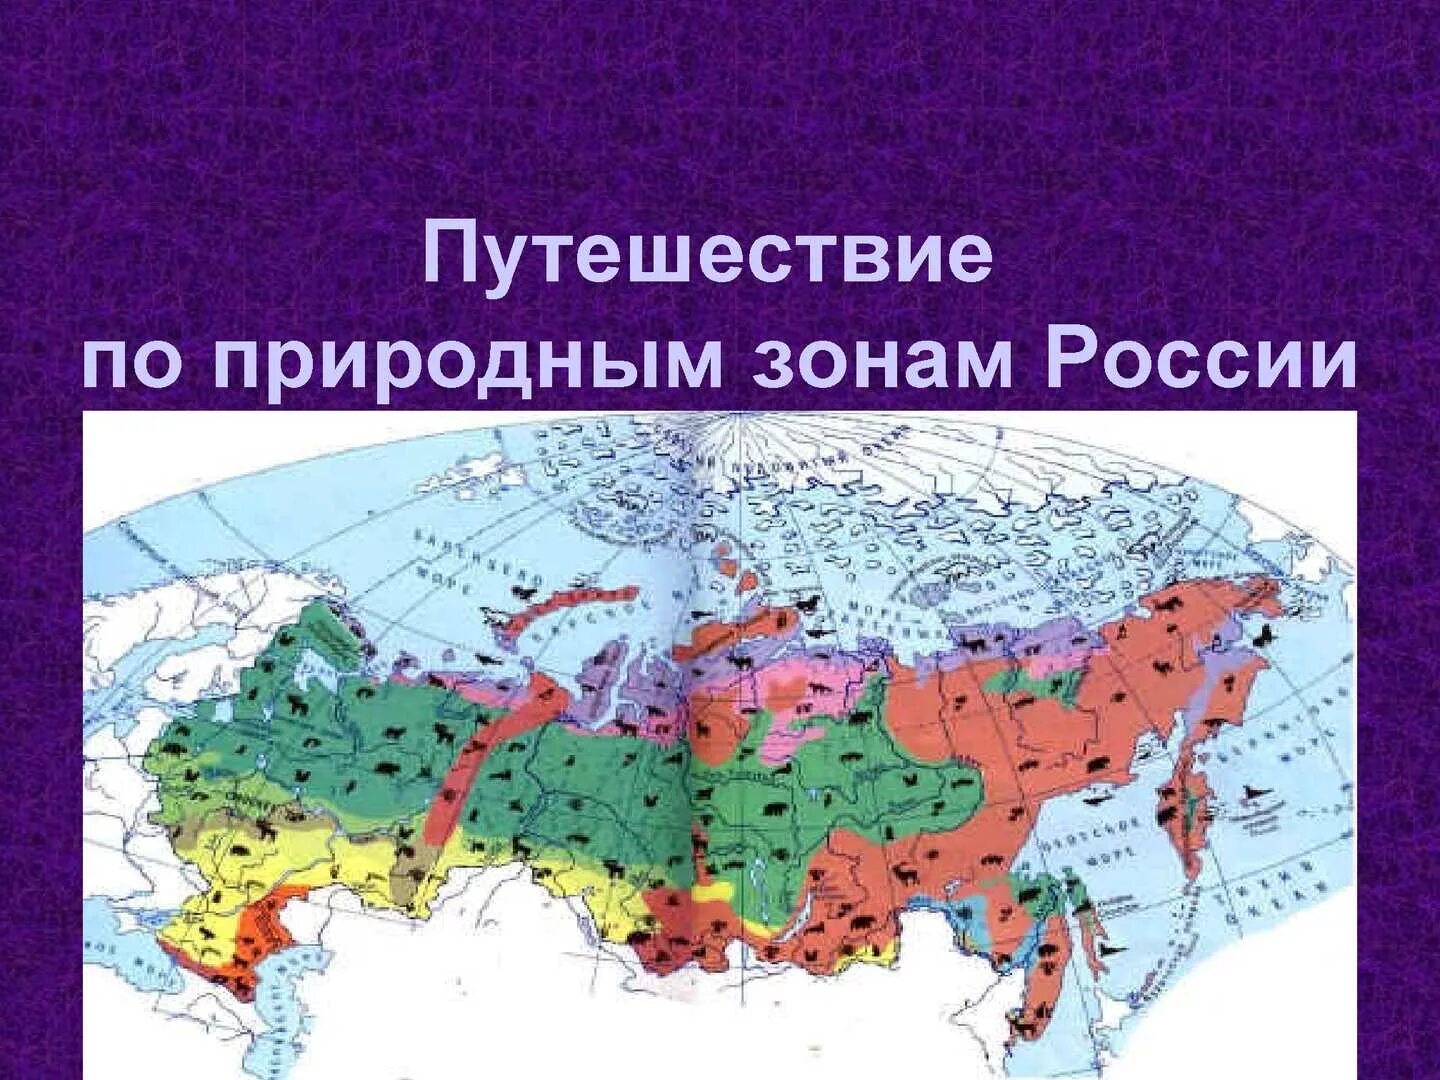 Зона тундры и лесотундры на карте России. Контурная карта зоны арктических пустынь тундры и лесотундры. Зона тундры на карте природных зон. Природныетзоны России. Тундра и другие зоны